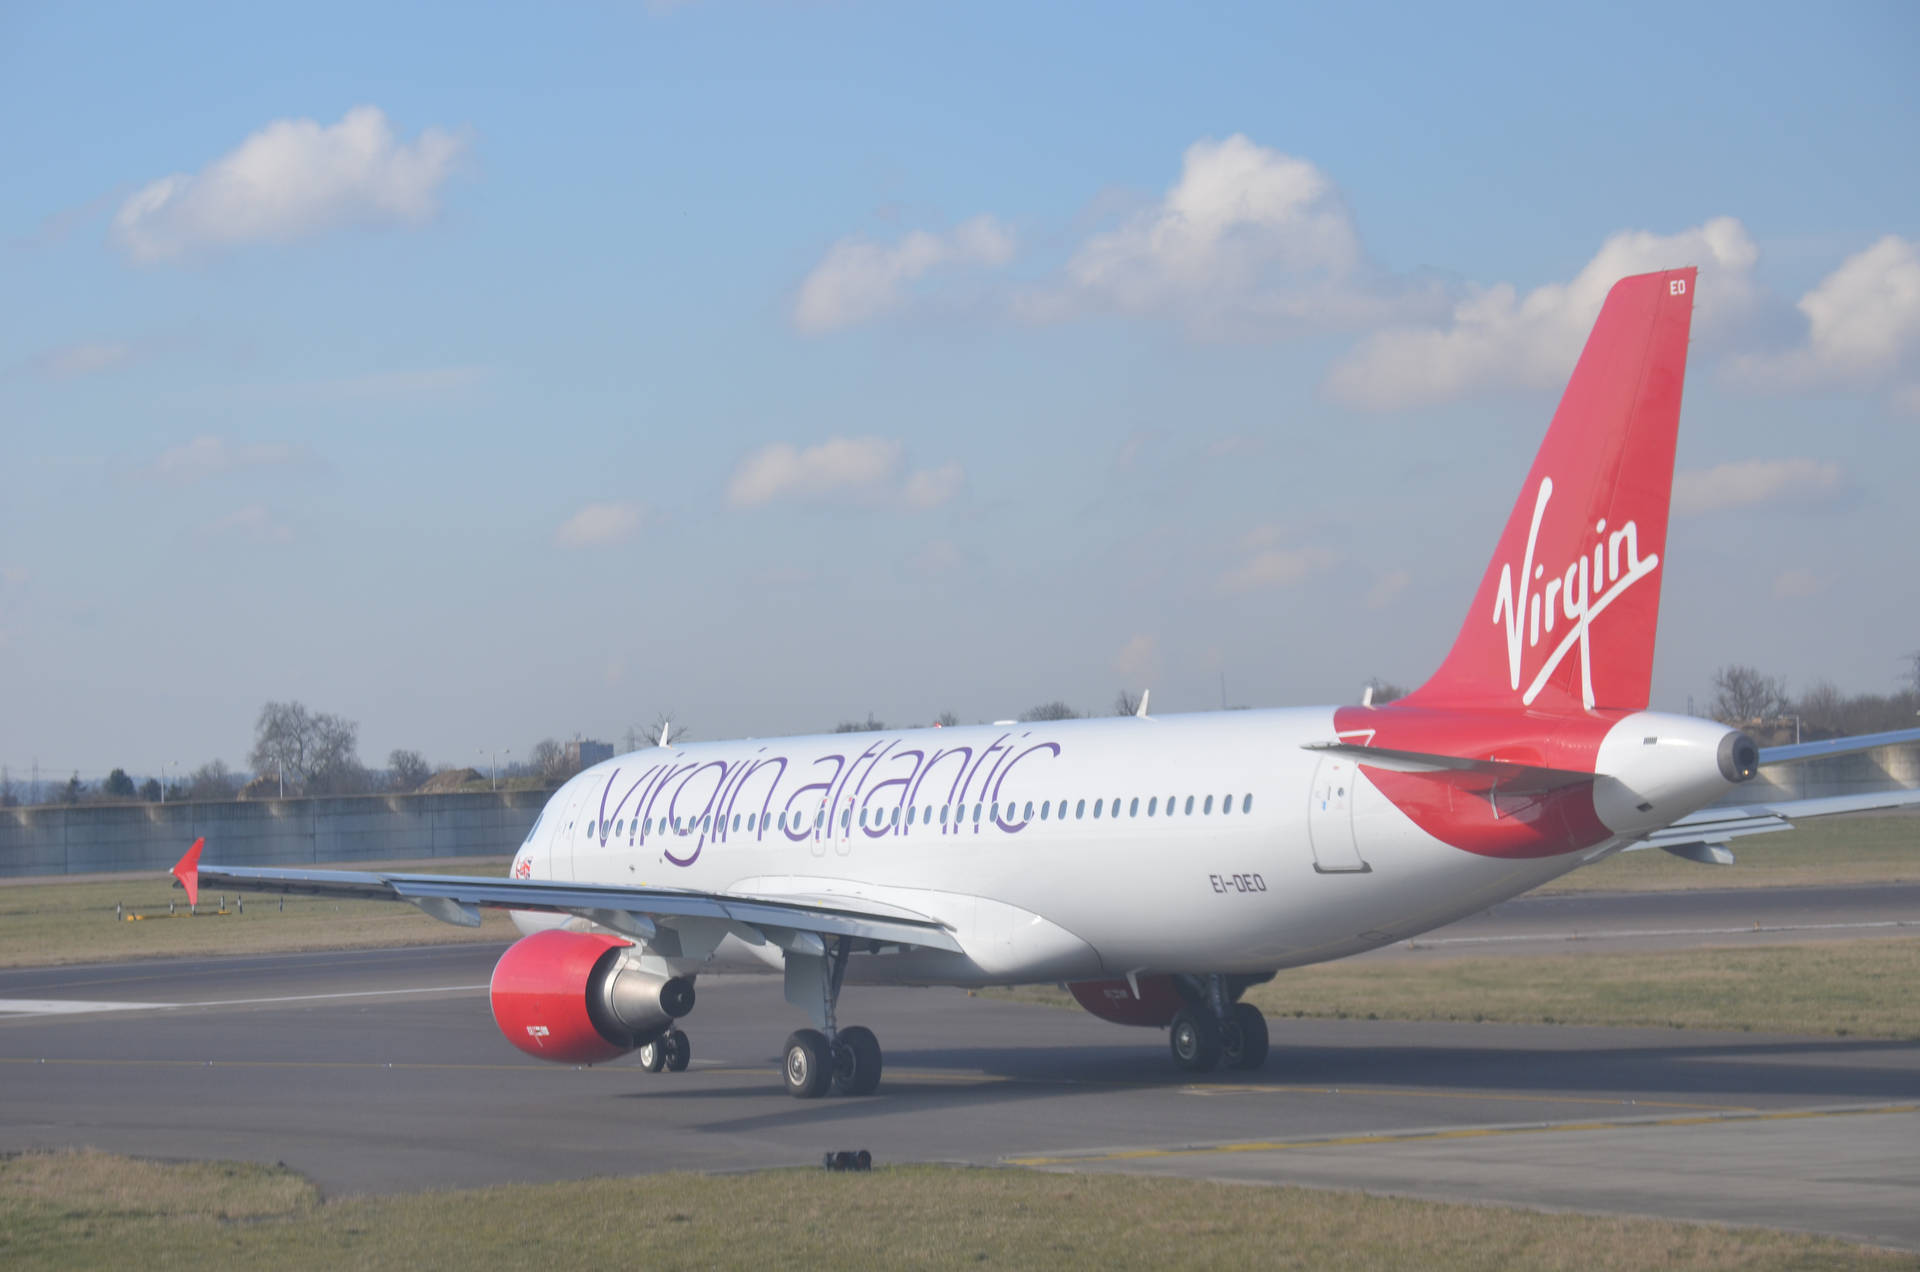 Parked Virgin Atlantic Aviation Plane Wallpaper